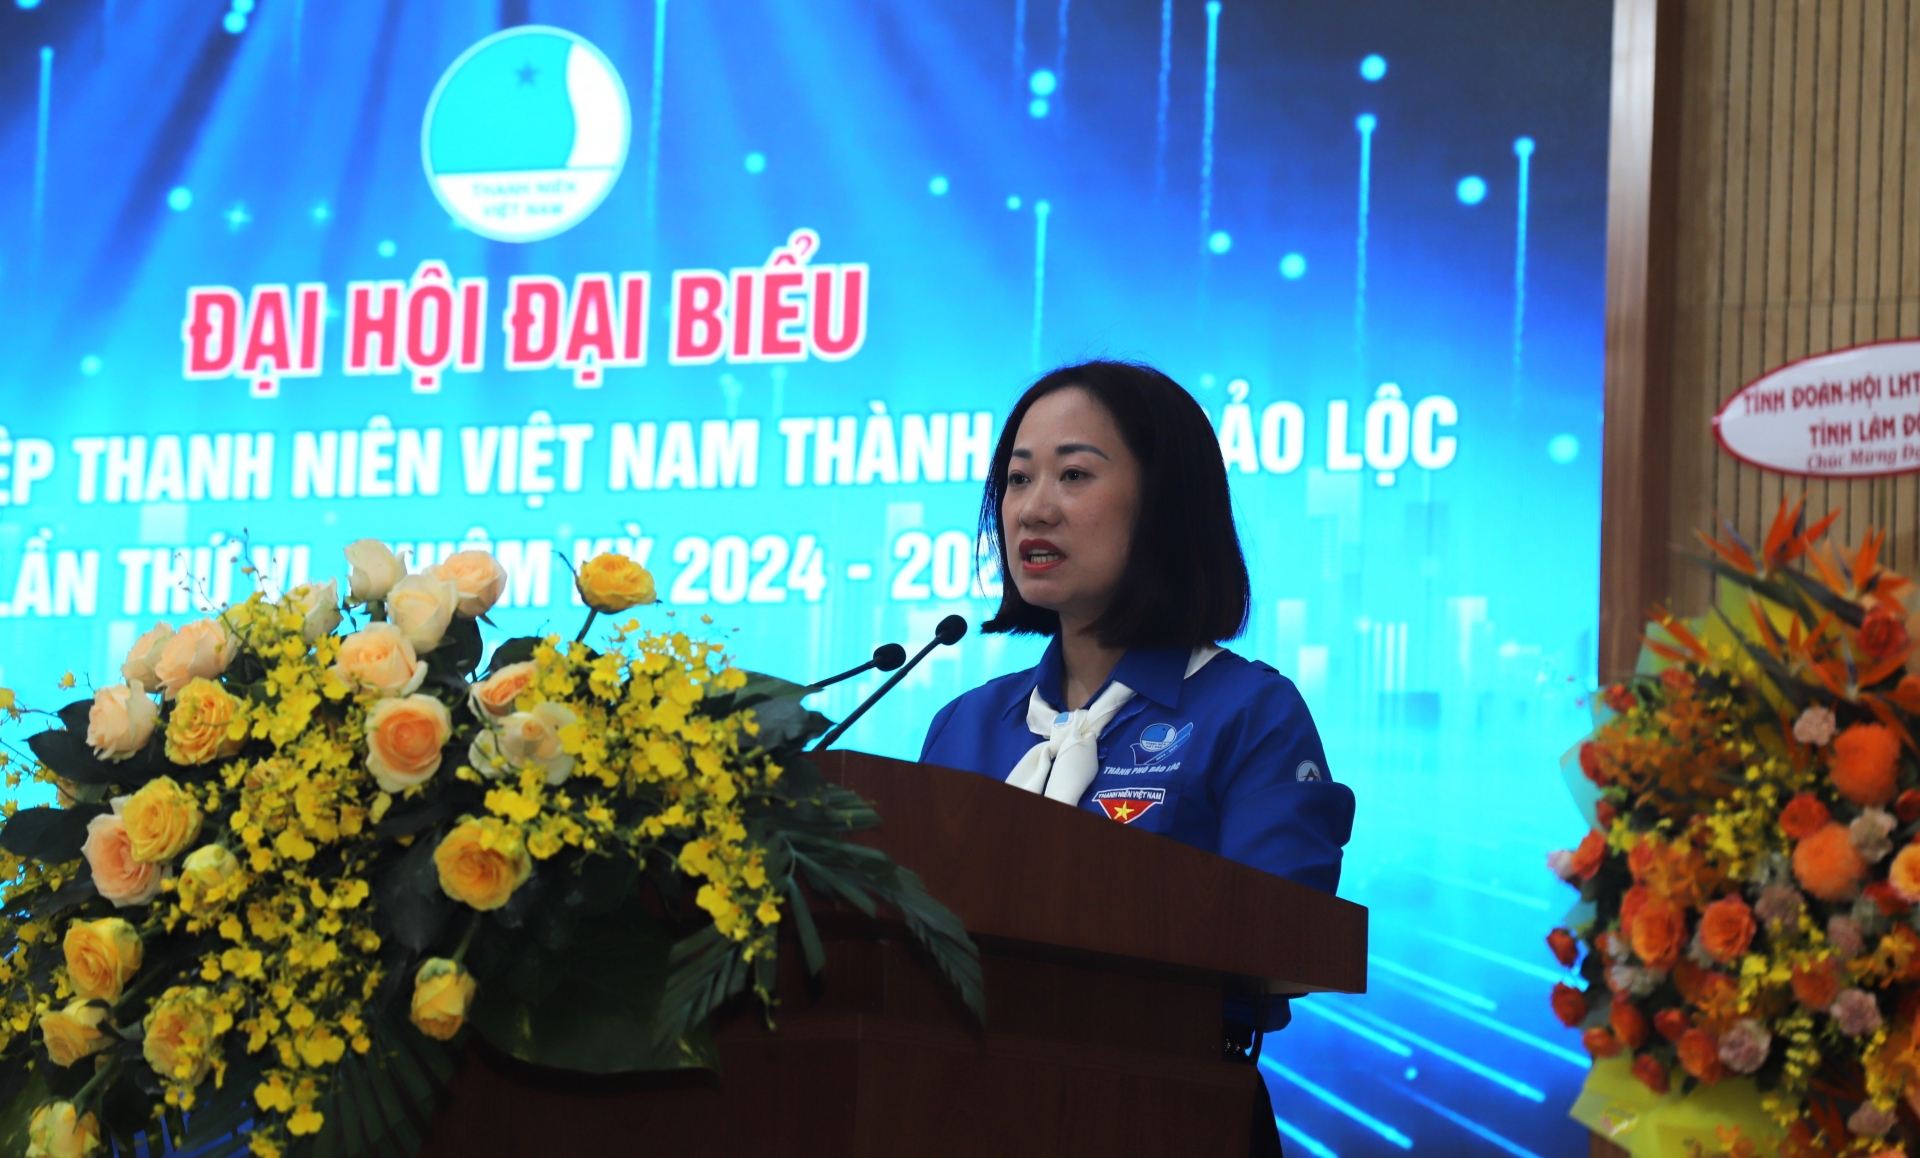 Chị Nguyễn Hà Thanh - Bí thư Thành Đoàn Bảo Lộc phát biểu khai mạc Đại hội